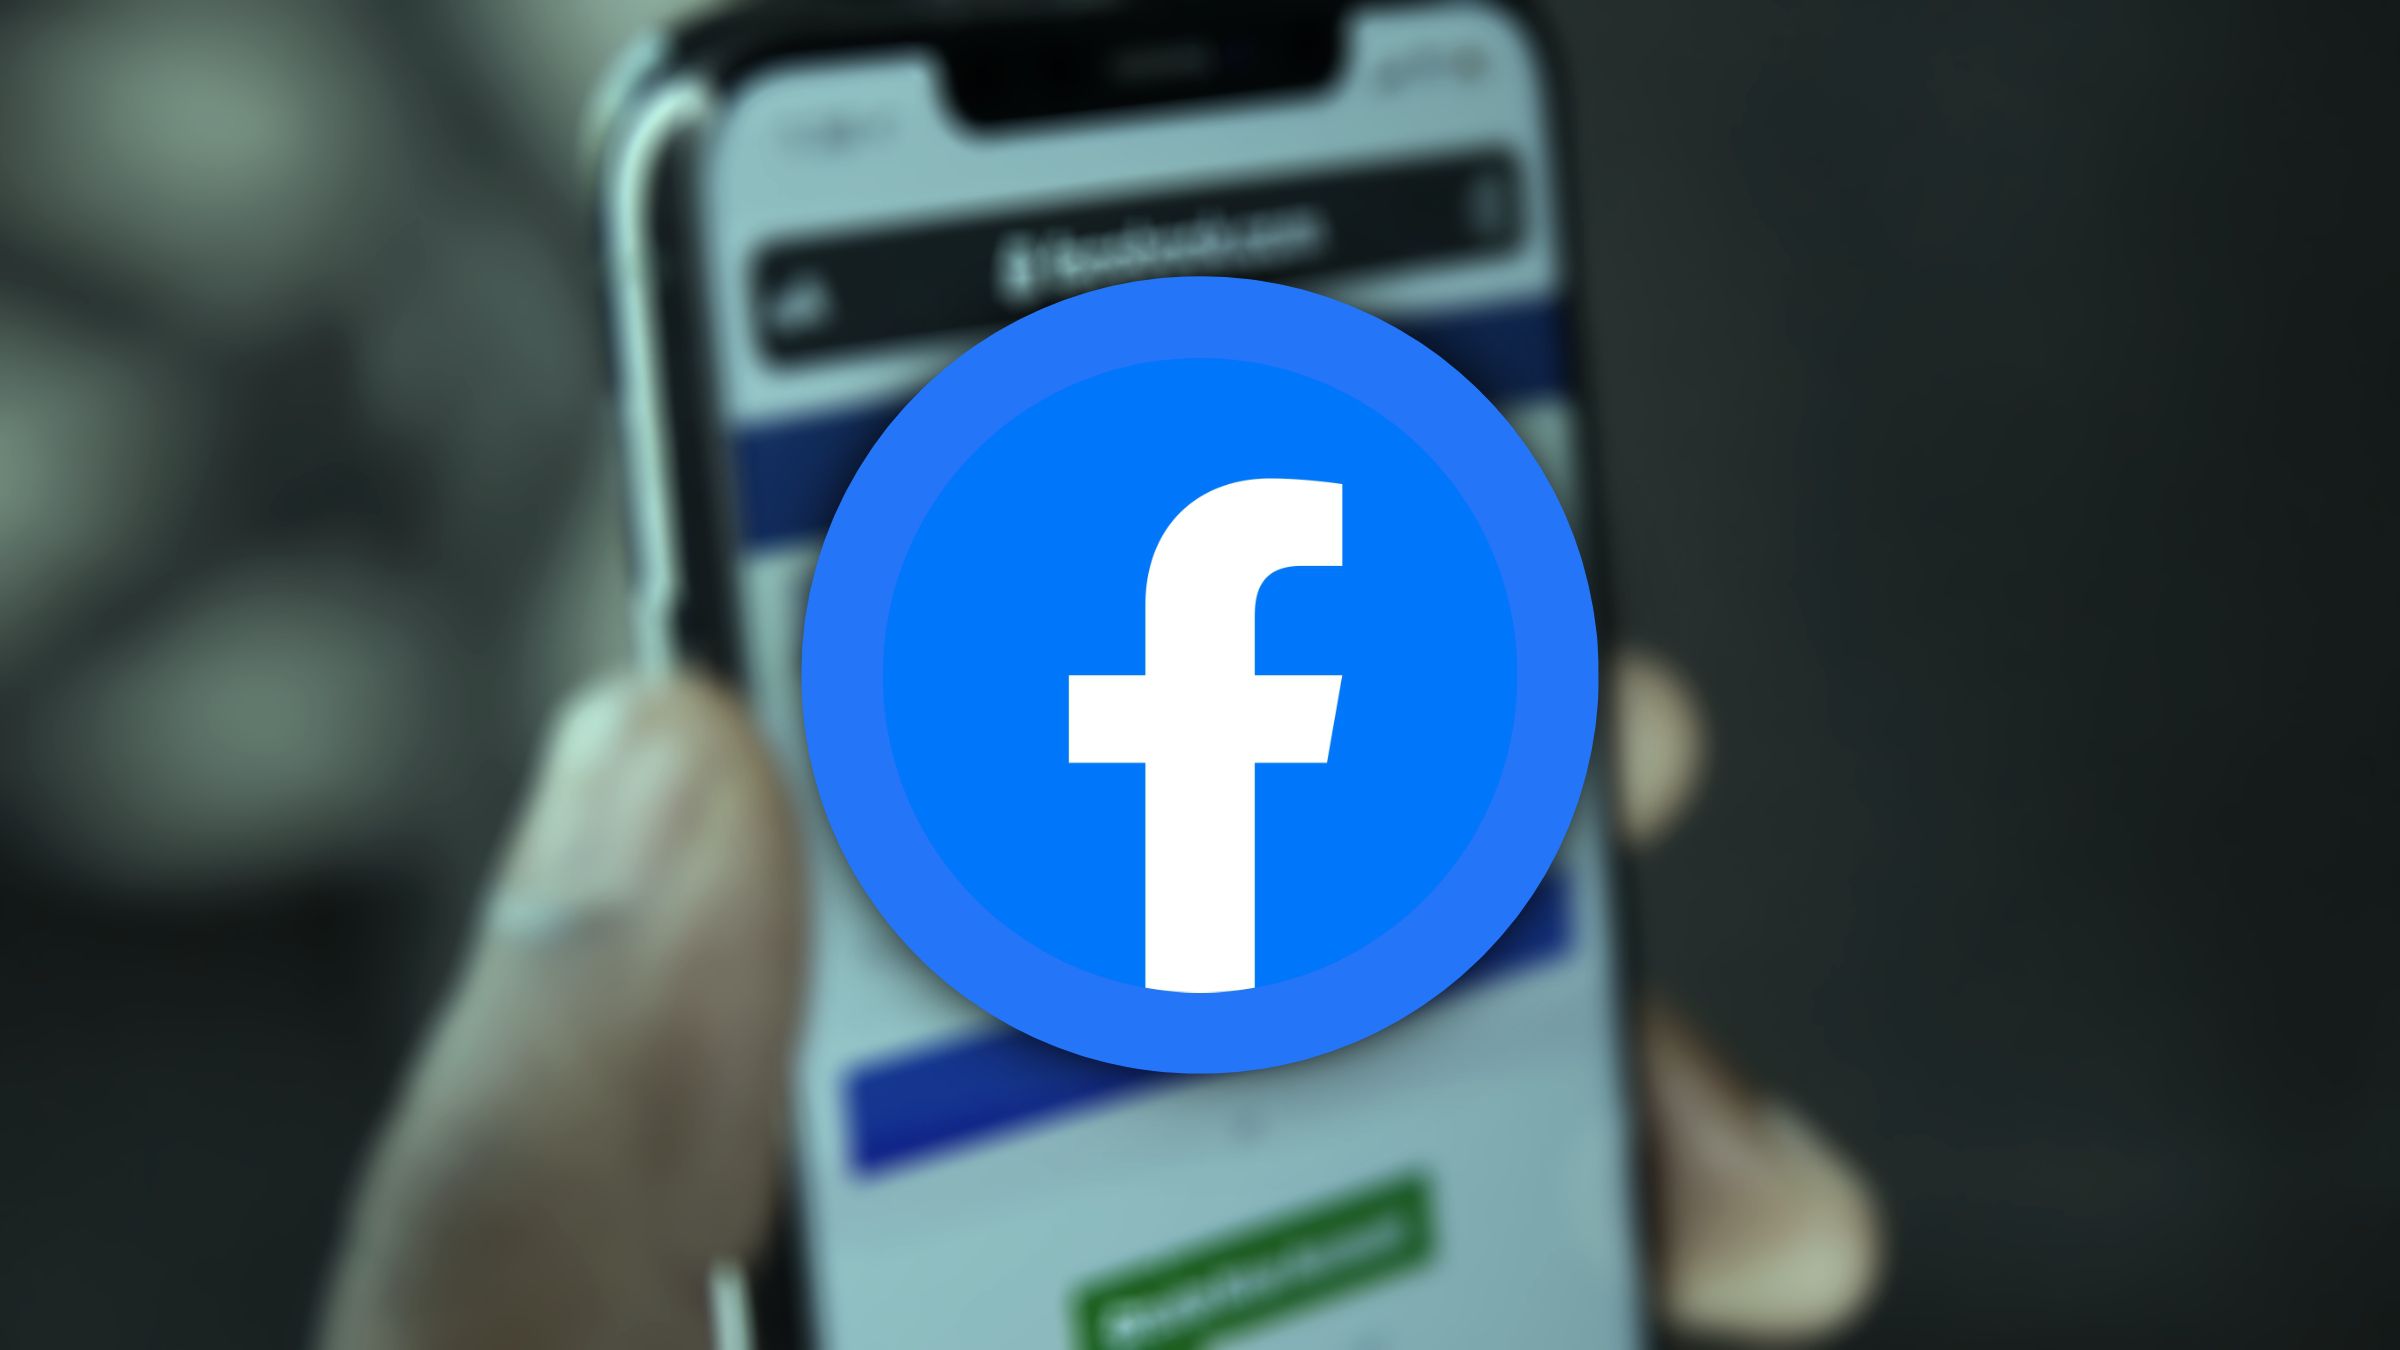 Facebook Entrar - Como fazer login pelo celular e computador?